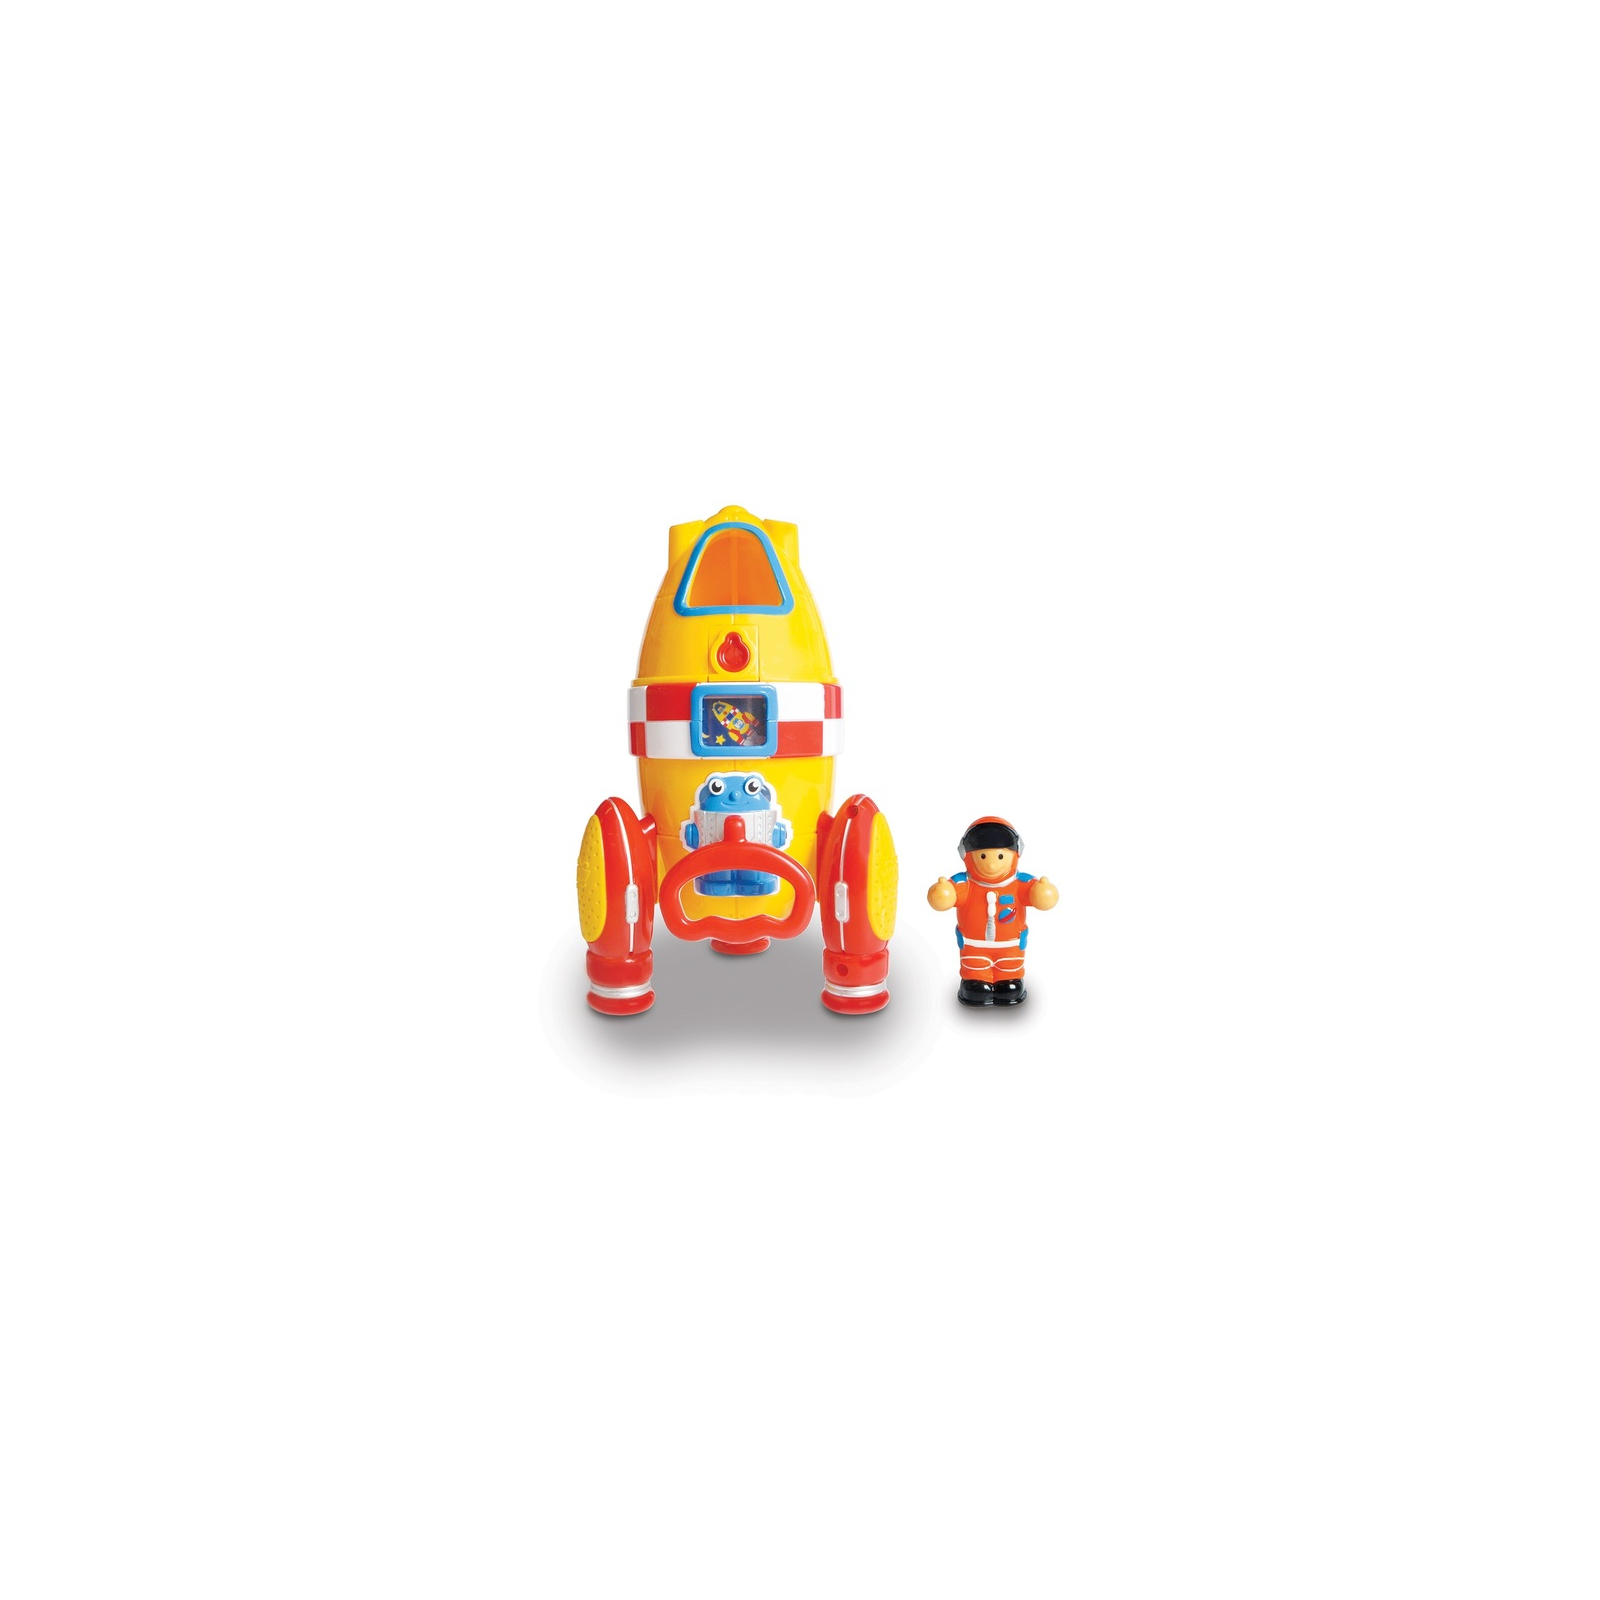 Розвиваюча іграшка Wow Toys Ракета Ронні (10230)